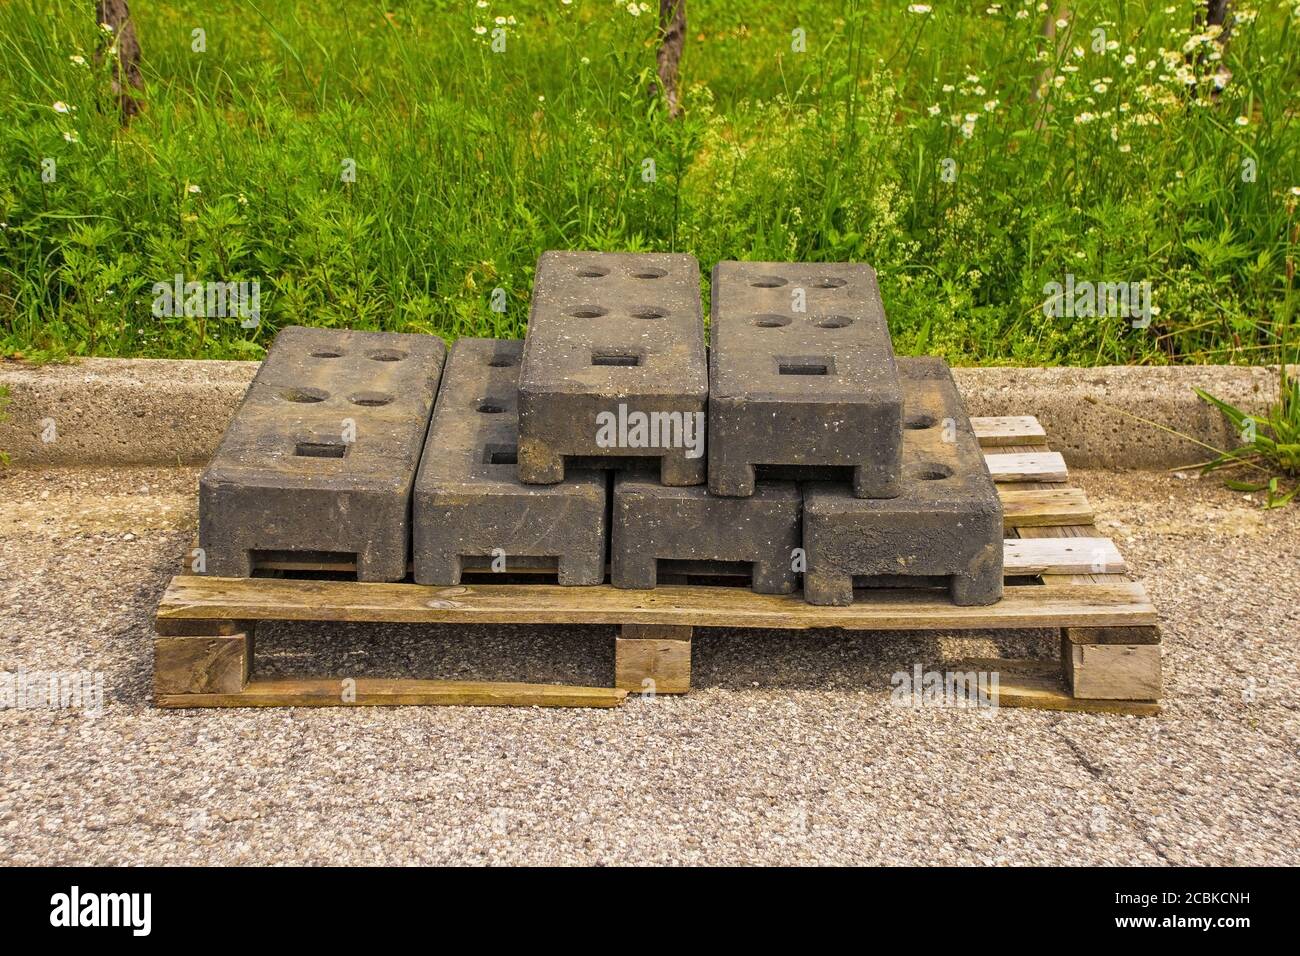 Bases de postes de cercado temporales de concreto ponderado para paneles de cercado de bloqueo en palets de madera en el sitio de obras de sustitución de alcantarillas En el NE de Italia Foto de stock